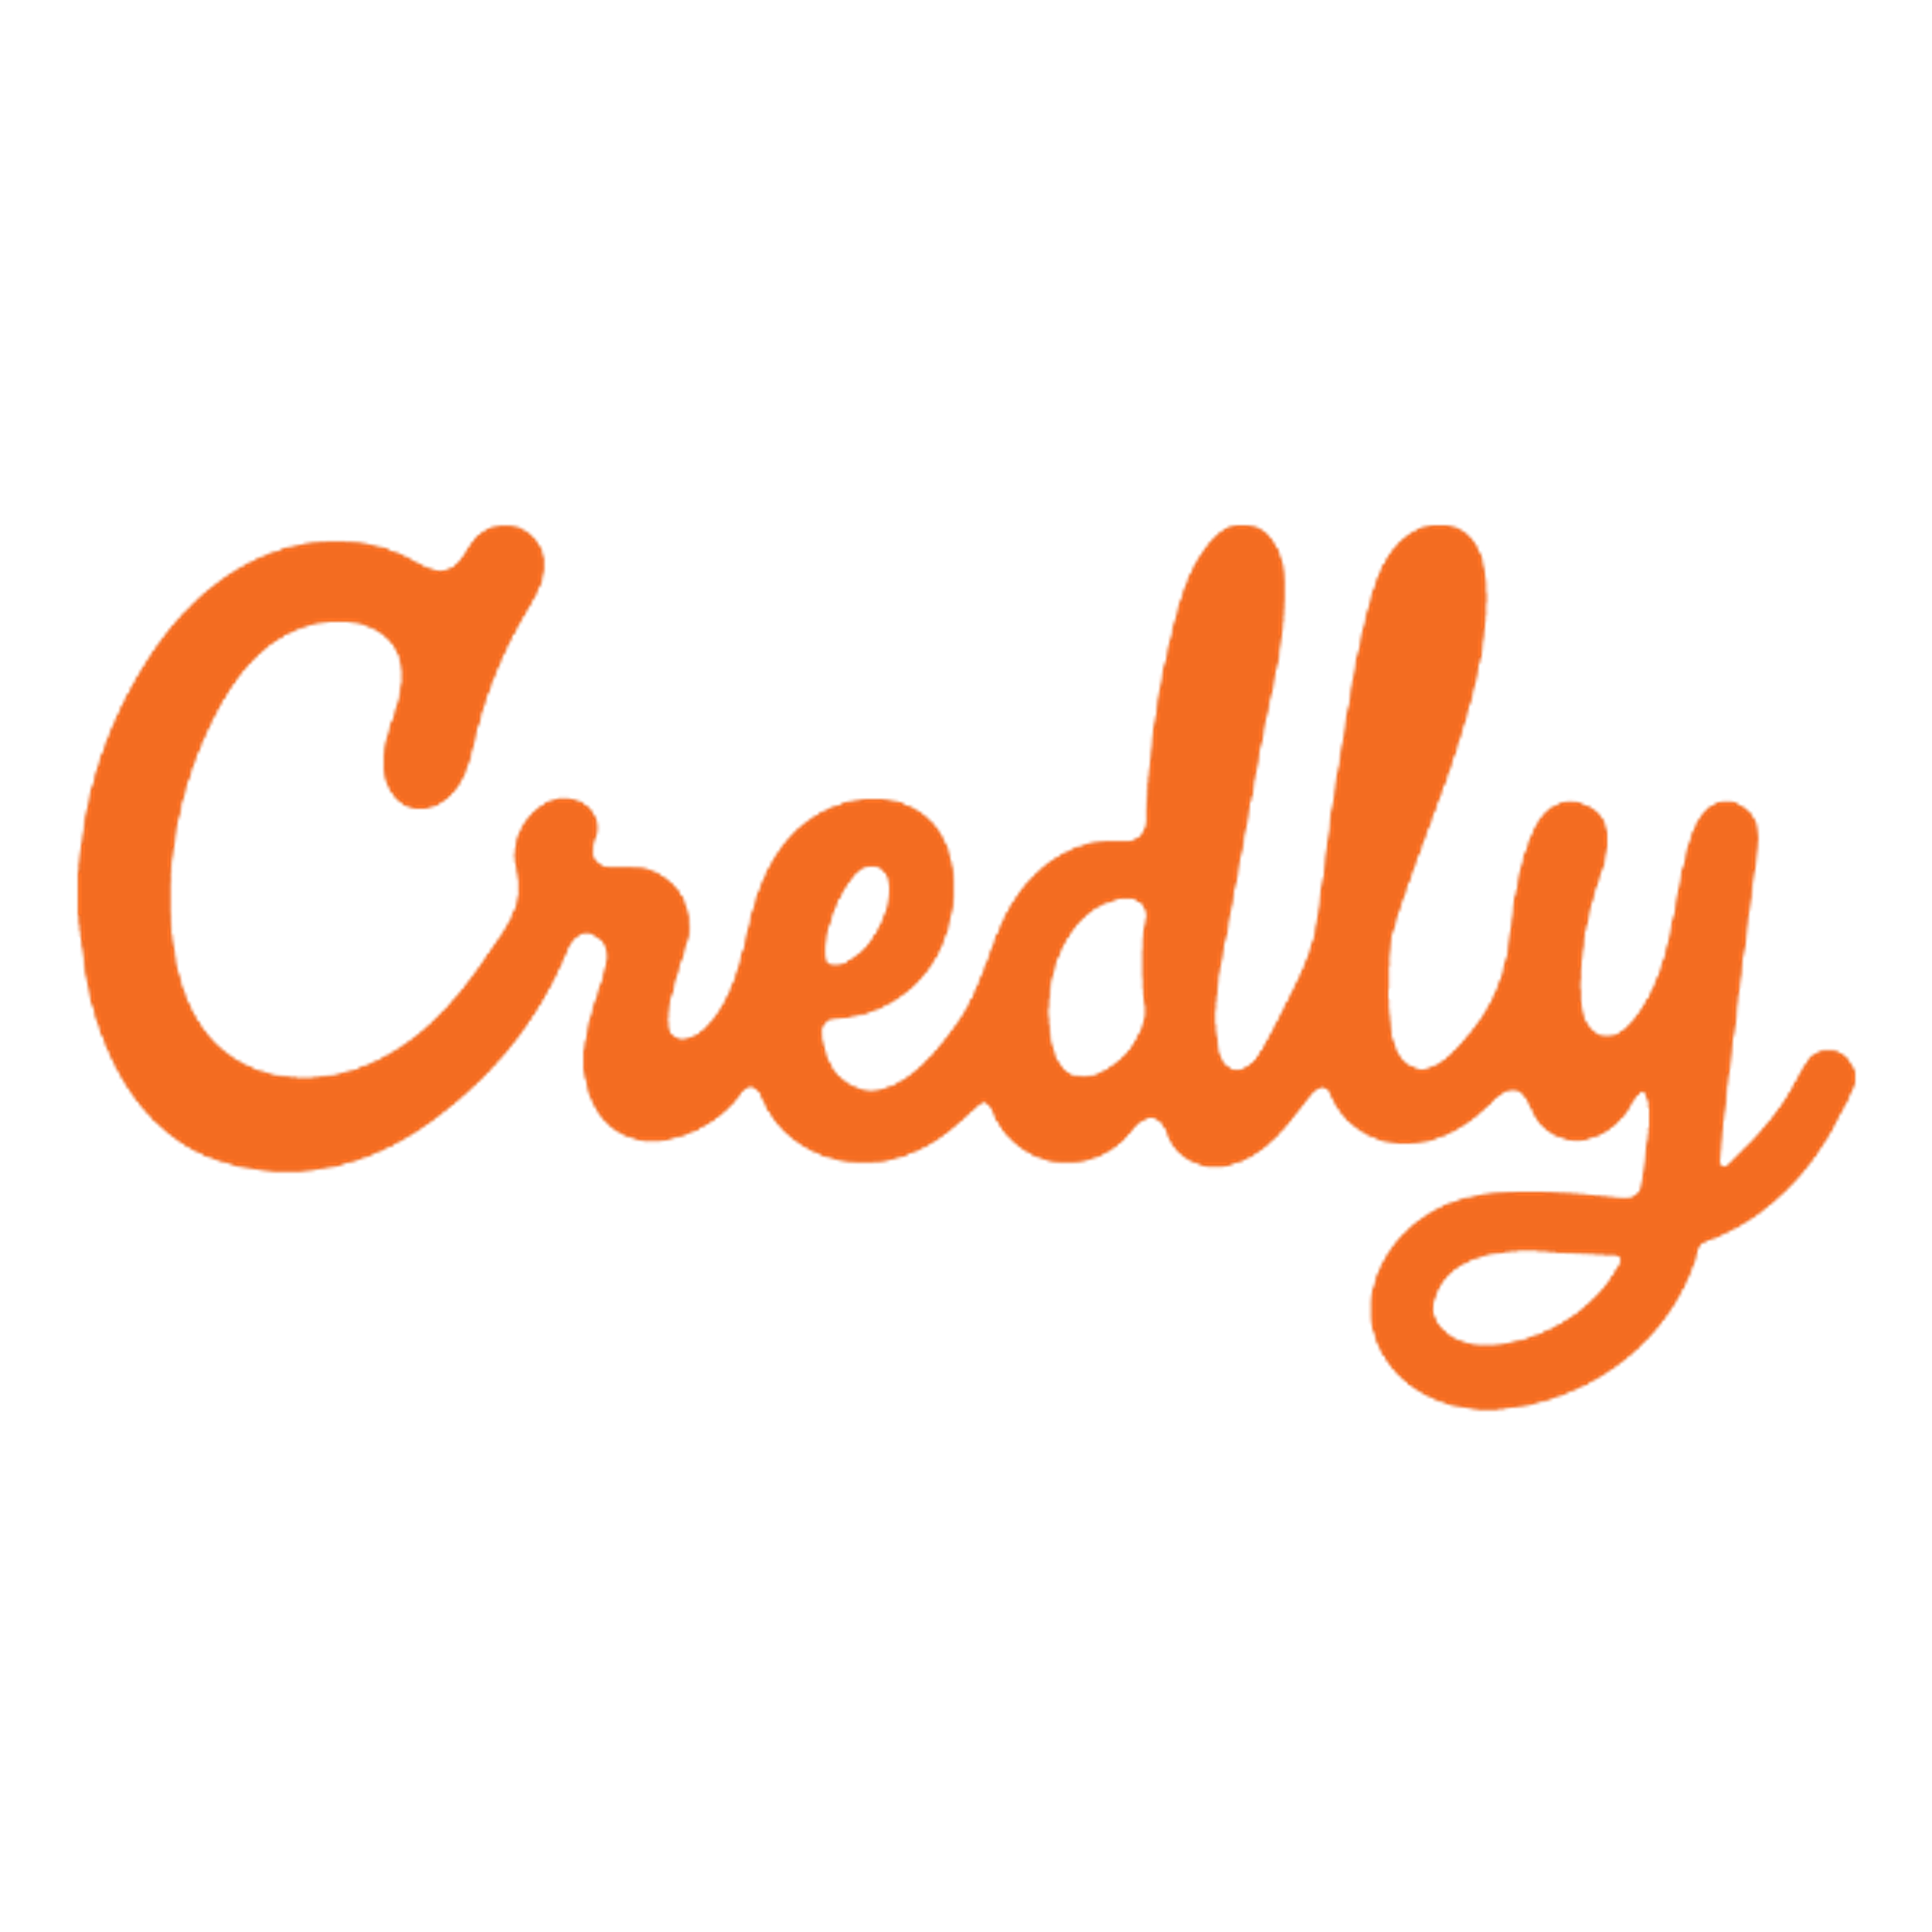              Credly logo